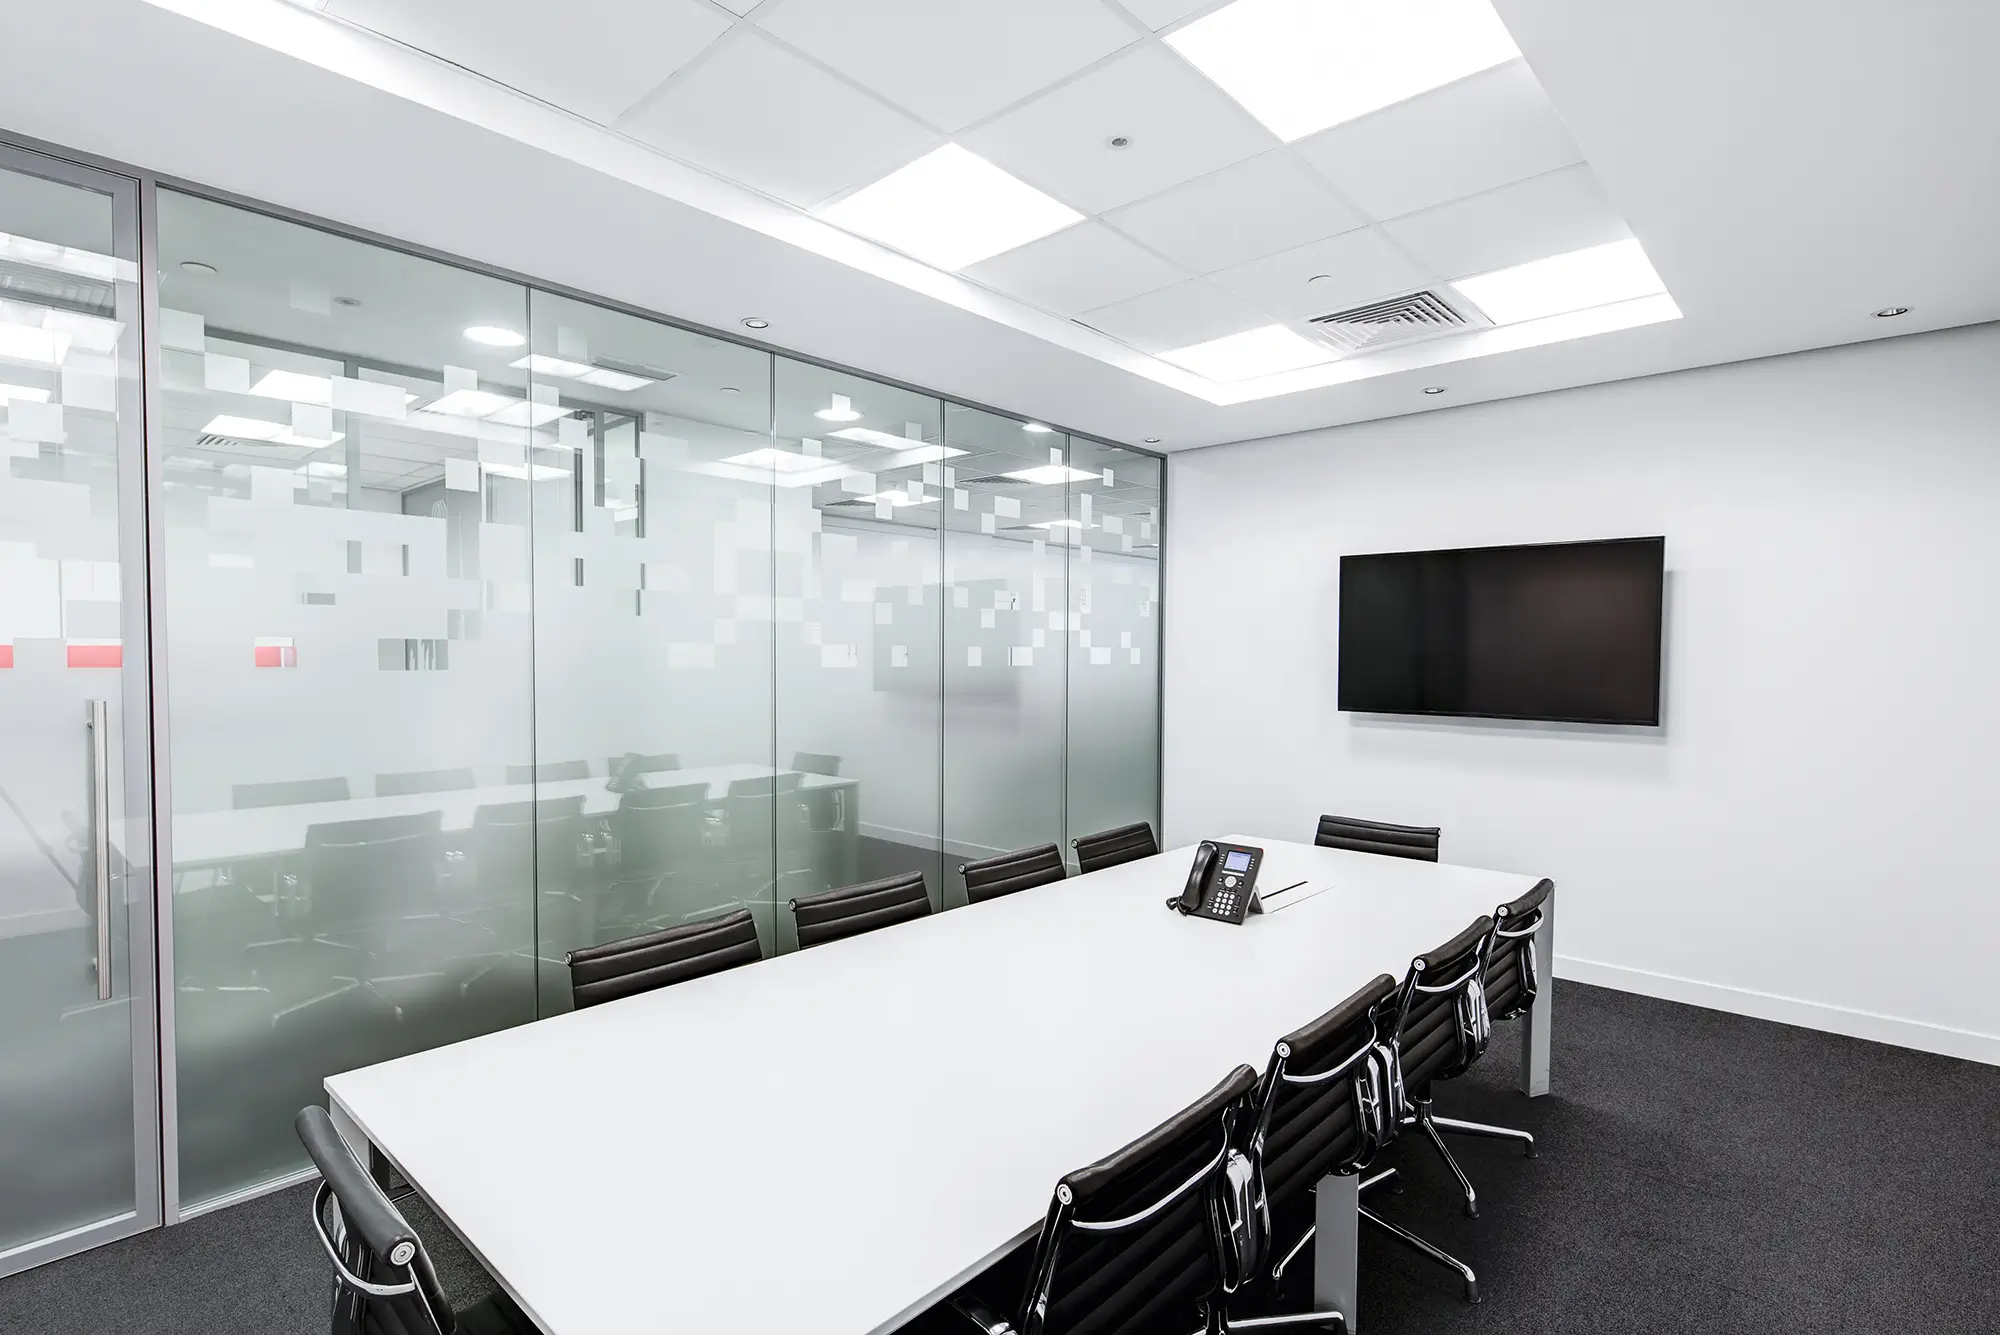 Iluminación Perfecta para la Oficina: Crea un Ambiente de Trabajo Productivo - Artículos Tocman